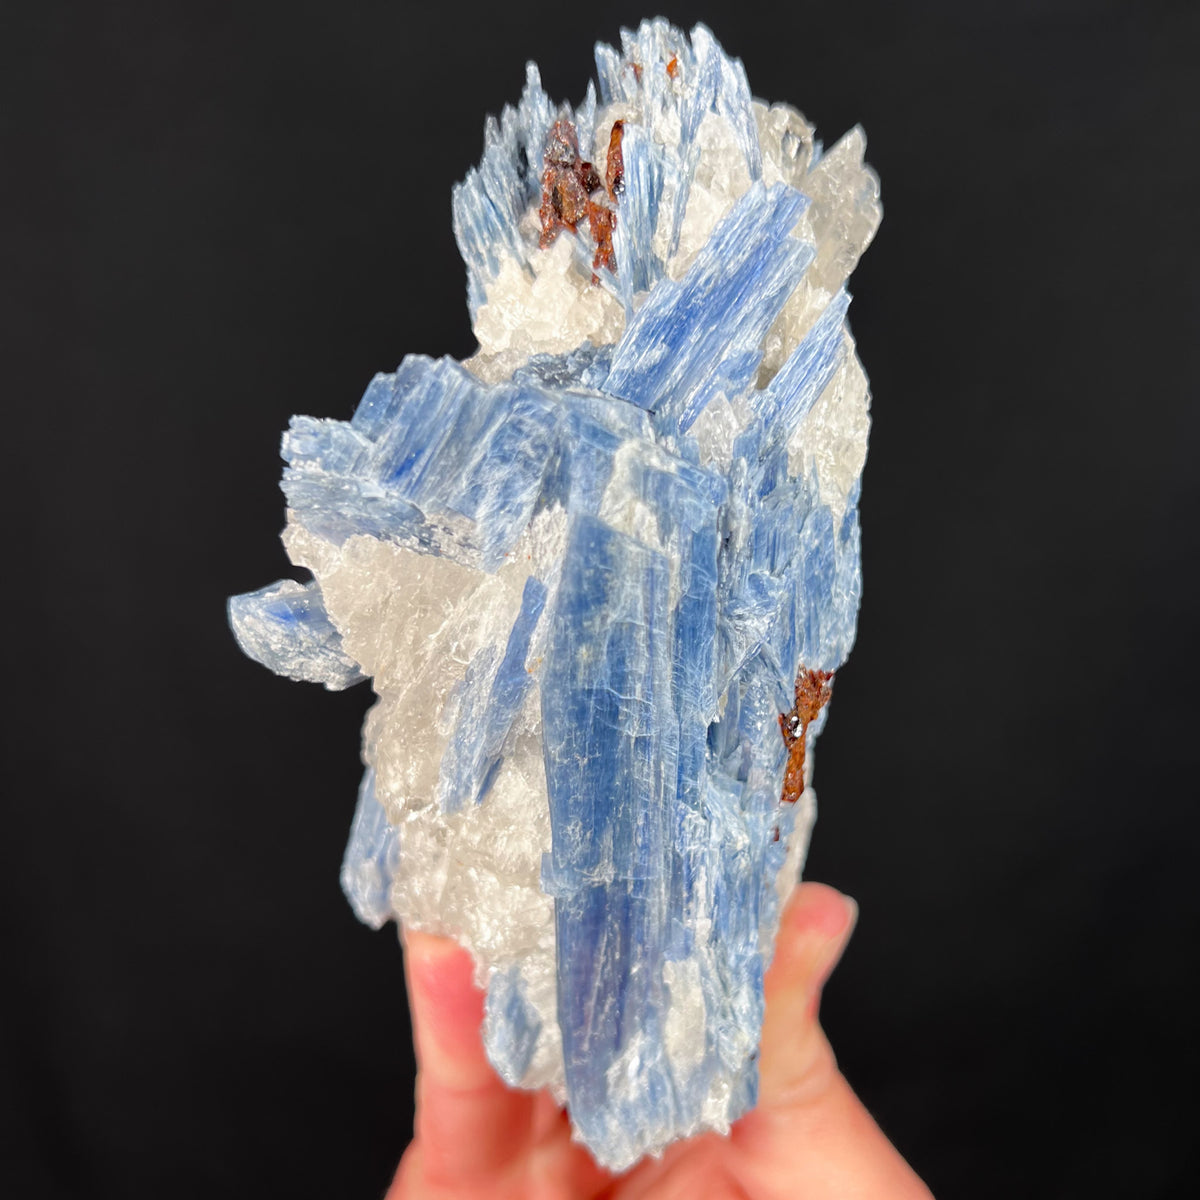 Blue Kyanite Mineral Specimen with Quartz and Staurolite